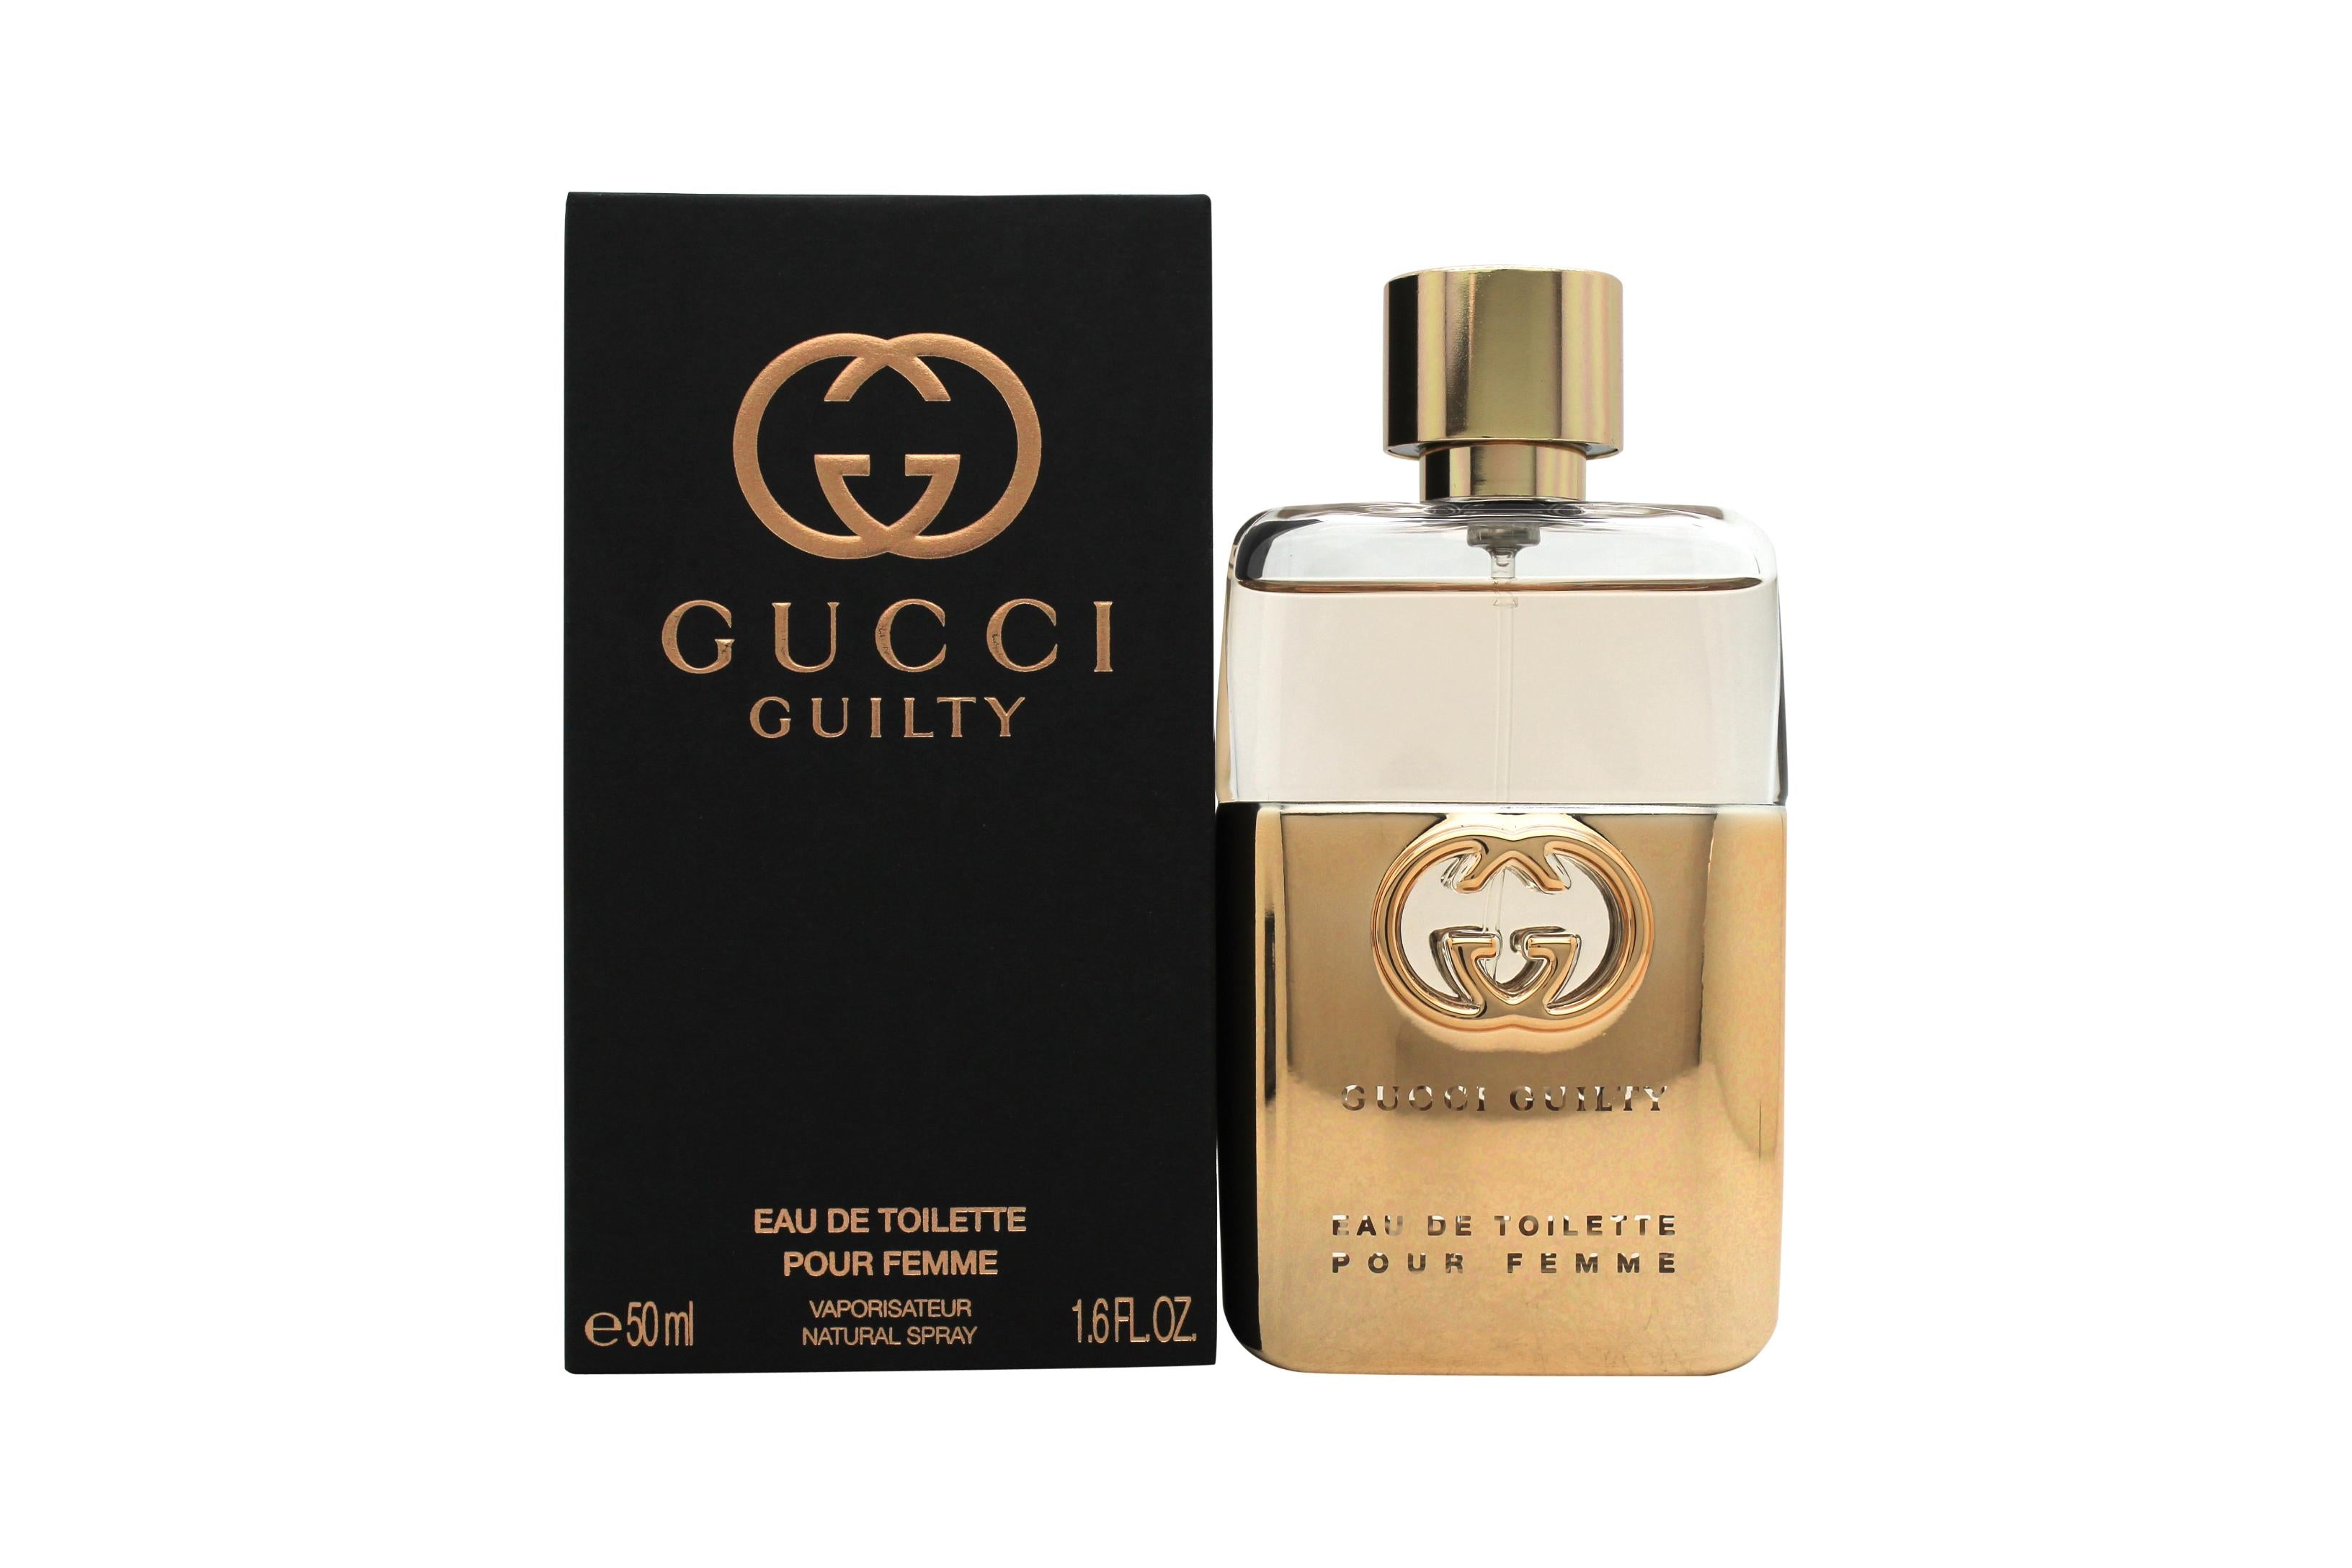 View Gucci Guilty Pour Femme Eau De Toilette Spray 50ml information